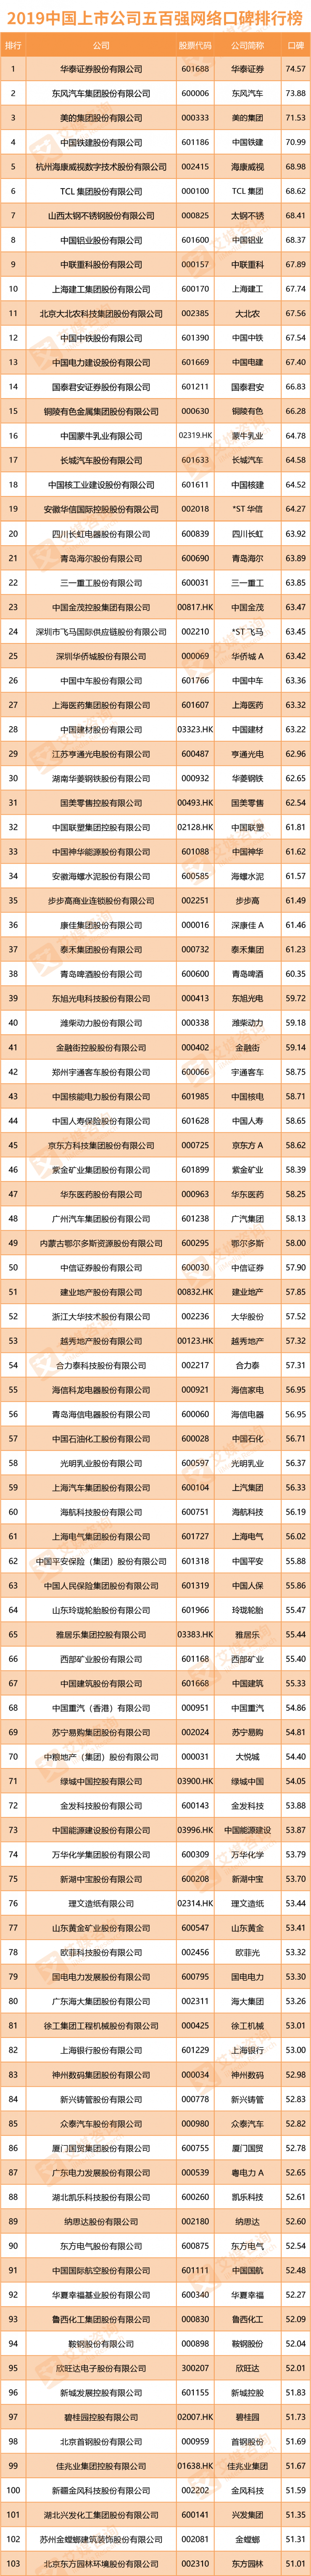 2019中国上市公司口碑排行榜：华泰证券第一 移动联通下滑